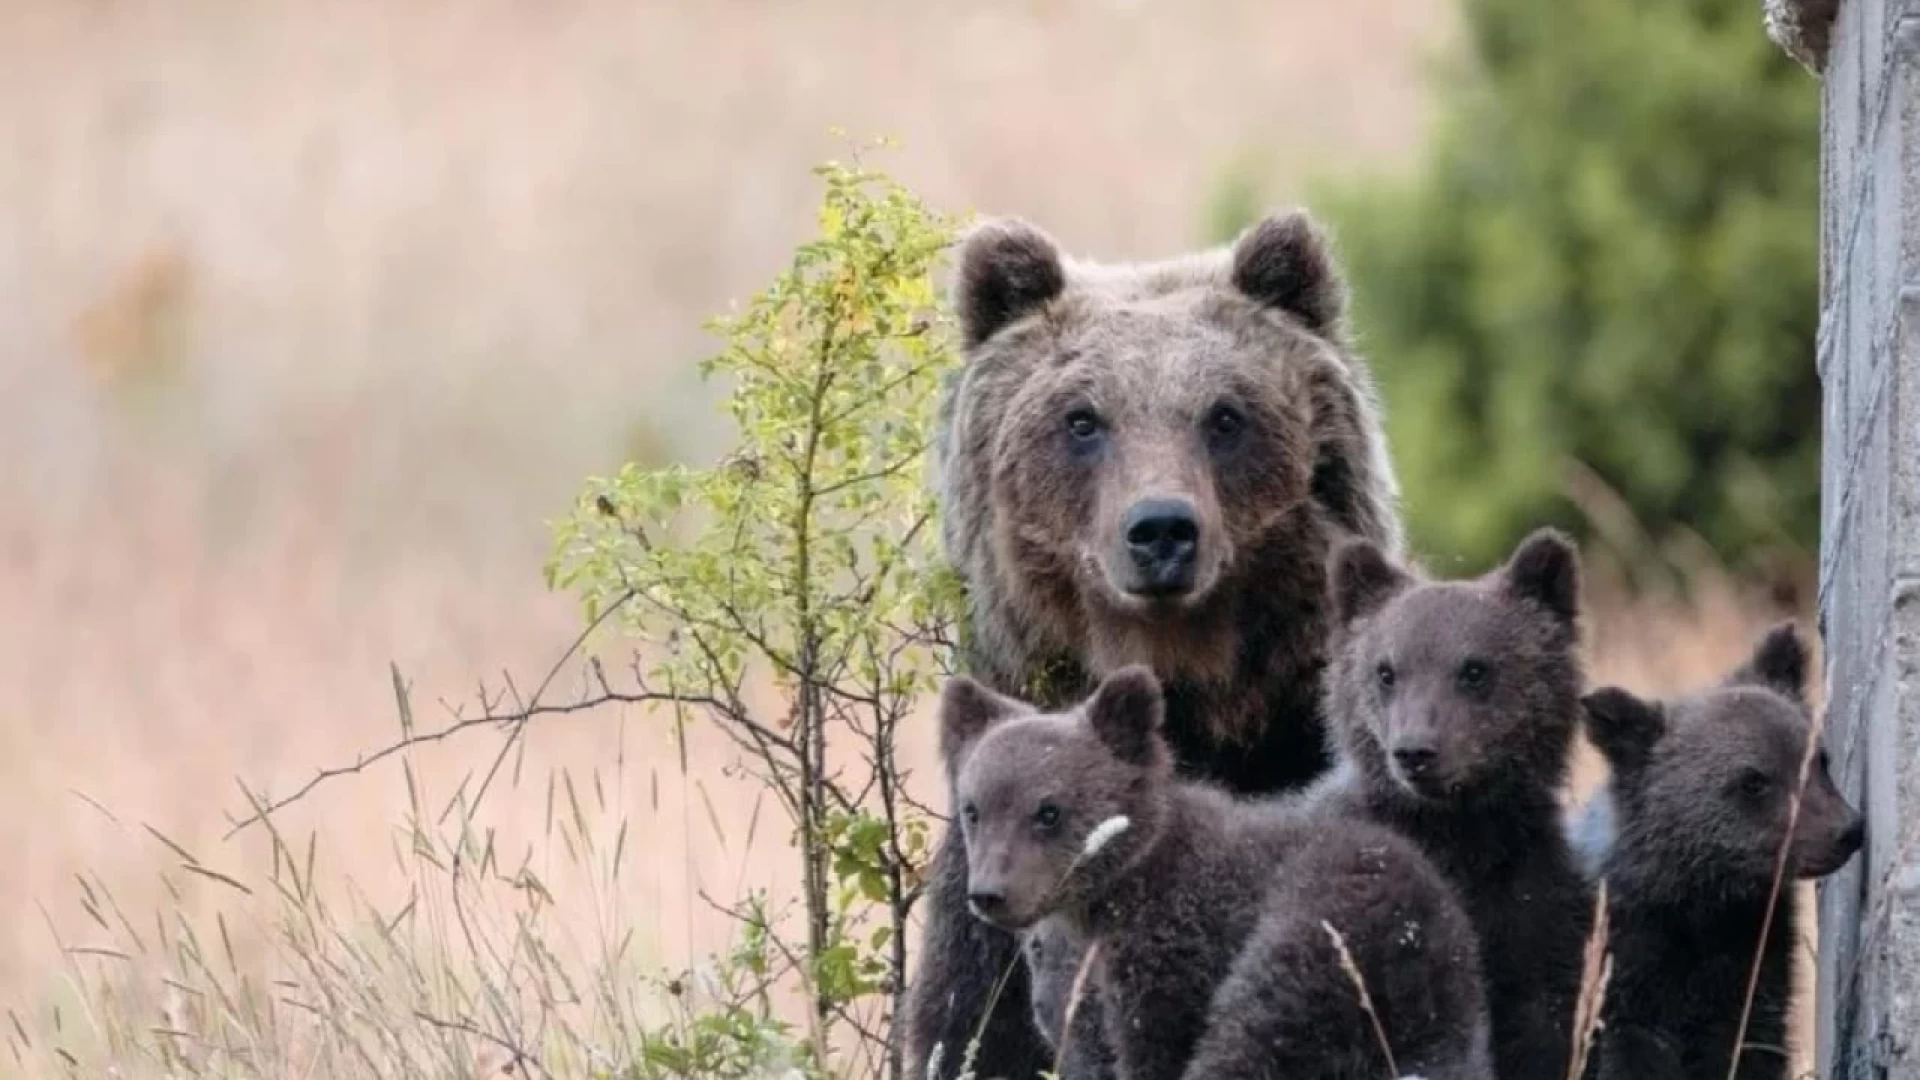 Ritrovati e messi in salvo i cuccioli dell’Orsa Amarena. La Procura di Avezzano apre un fascicolo nei confronti del 56enne colpevole dell’uccisione dell’orso.